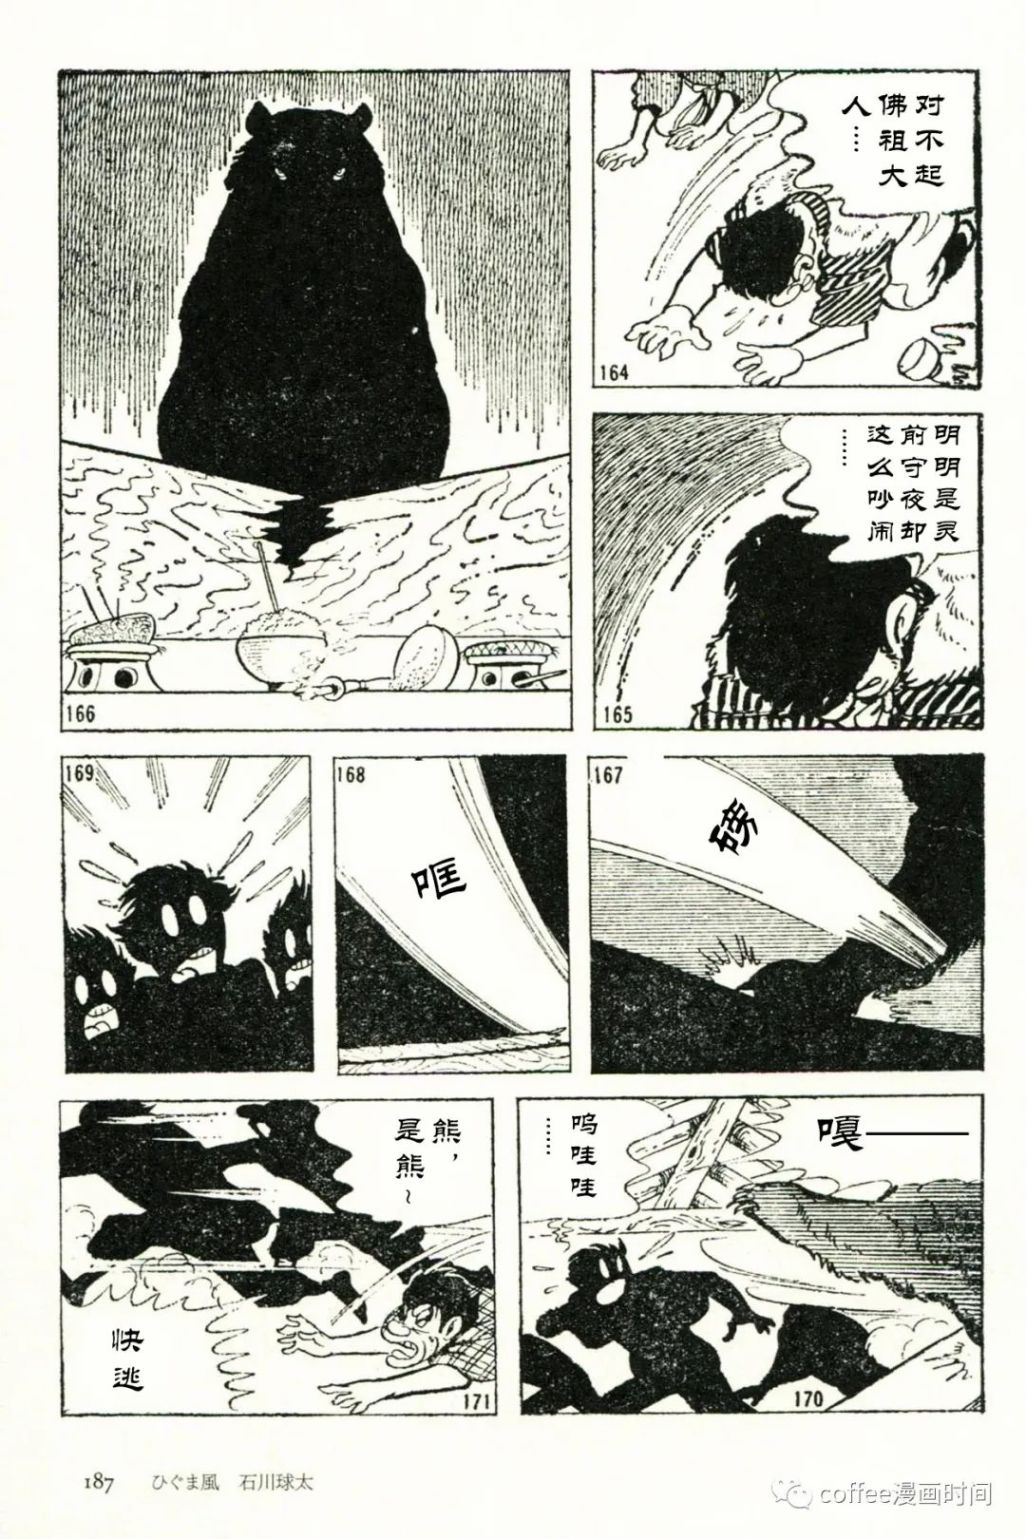 日本短篇漫畫傑作集 - 石川球太《棕熊風》 - 1